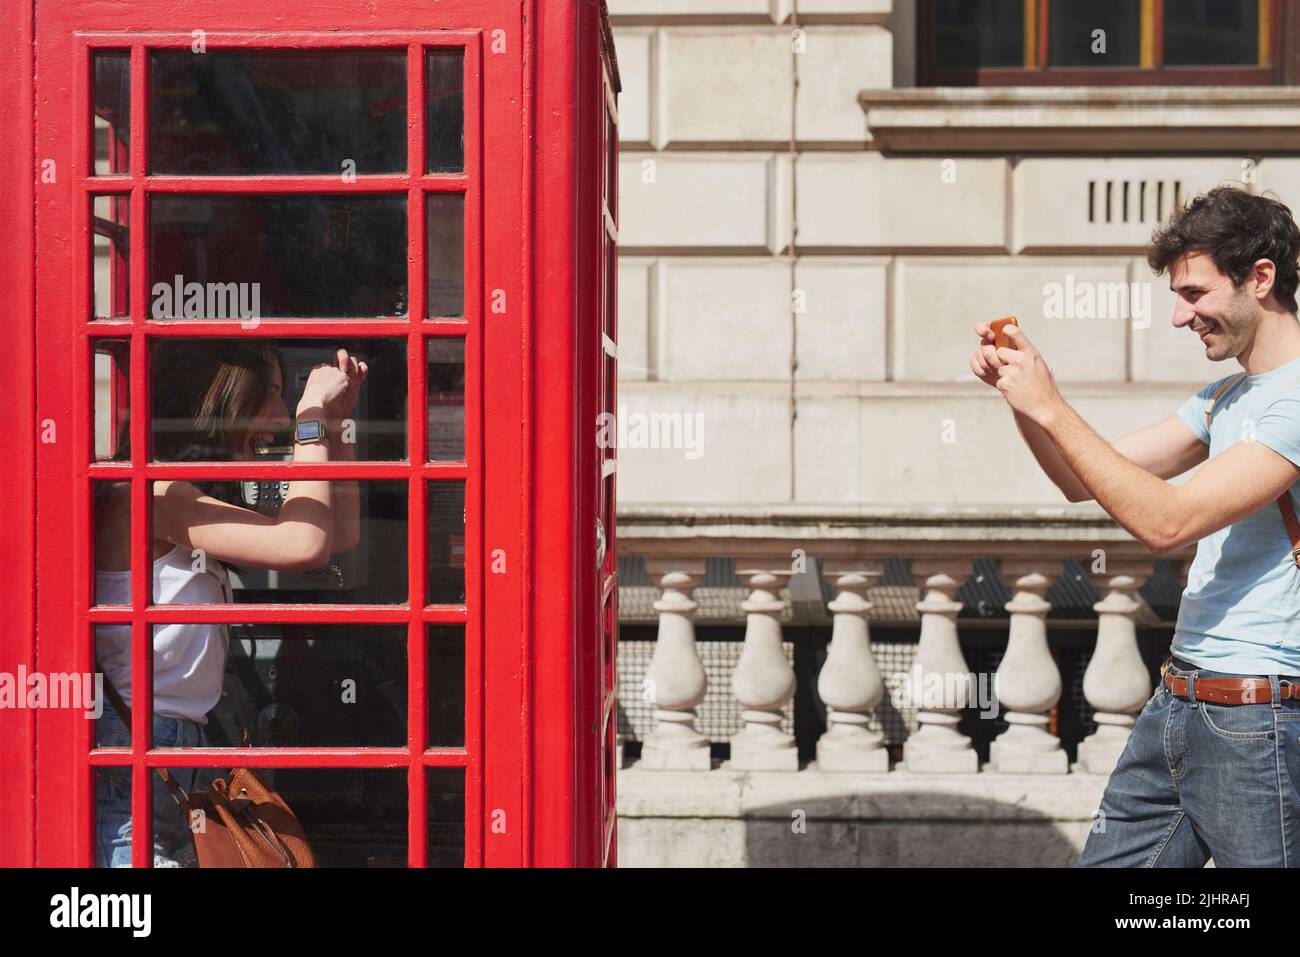 London rief an, wir antworteten: Ein junger Mann, der mit seinem Smartphone in einer Telefonzelle Fotos von seiner Freundin machte, während er die Stadt London erkundete. Stockfoto